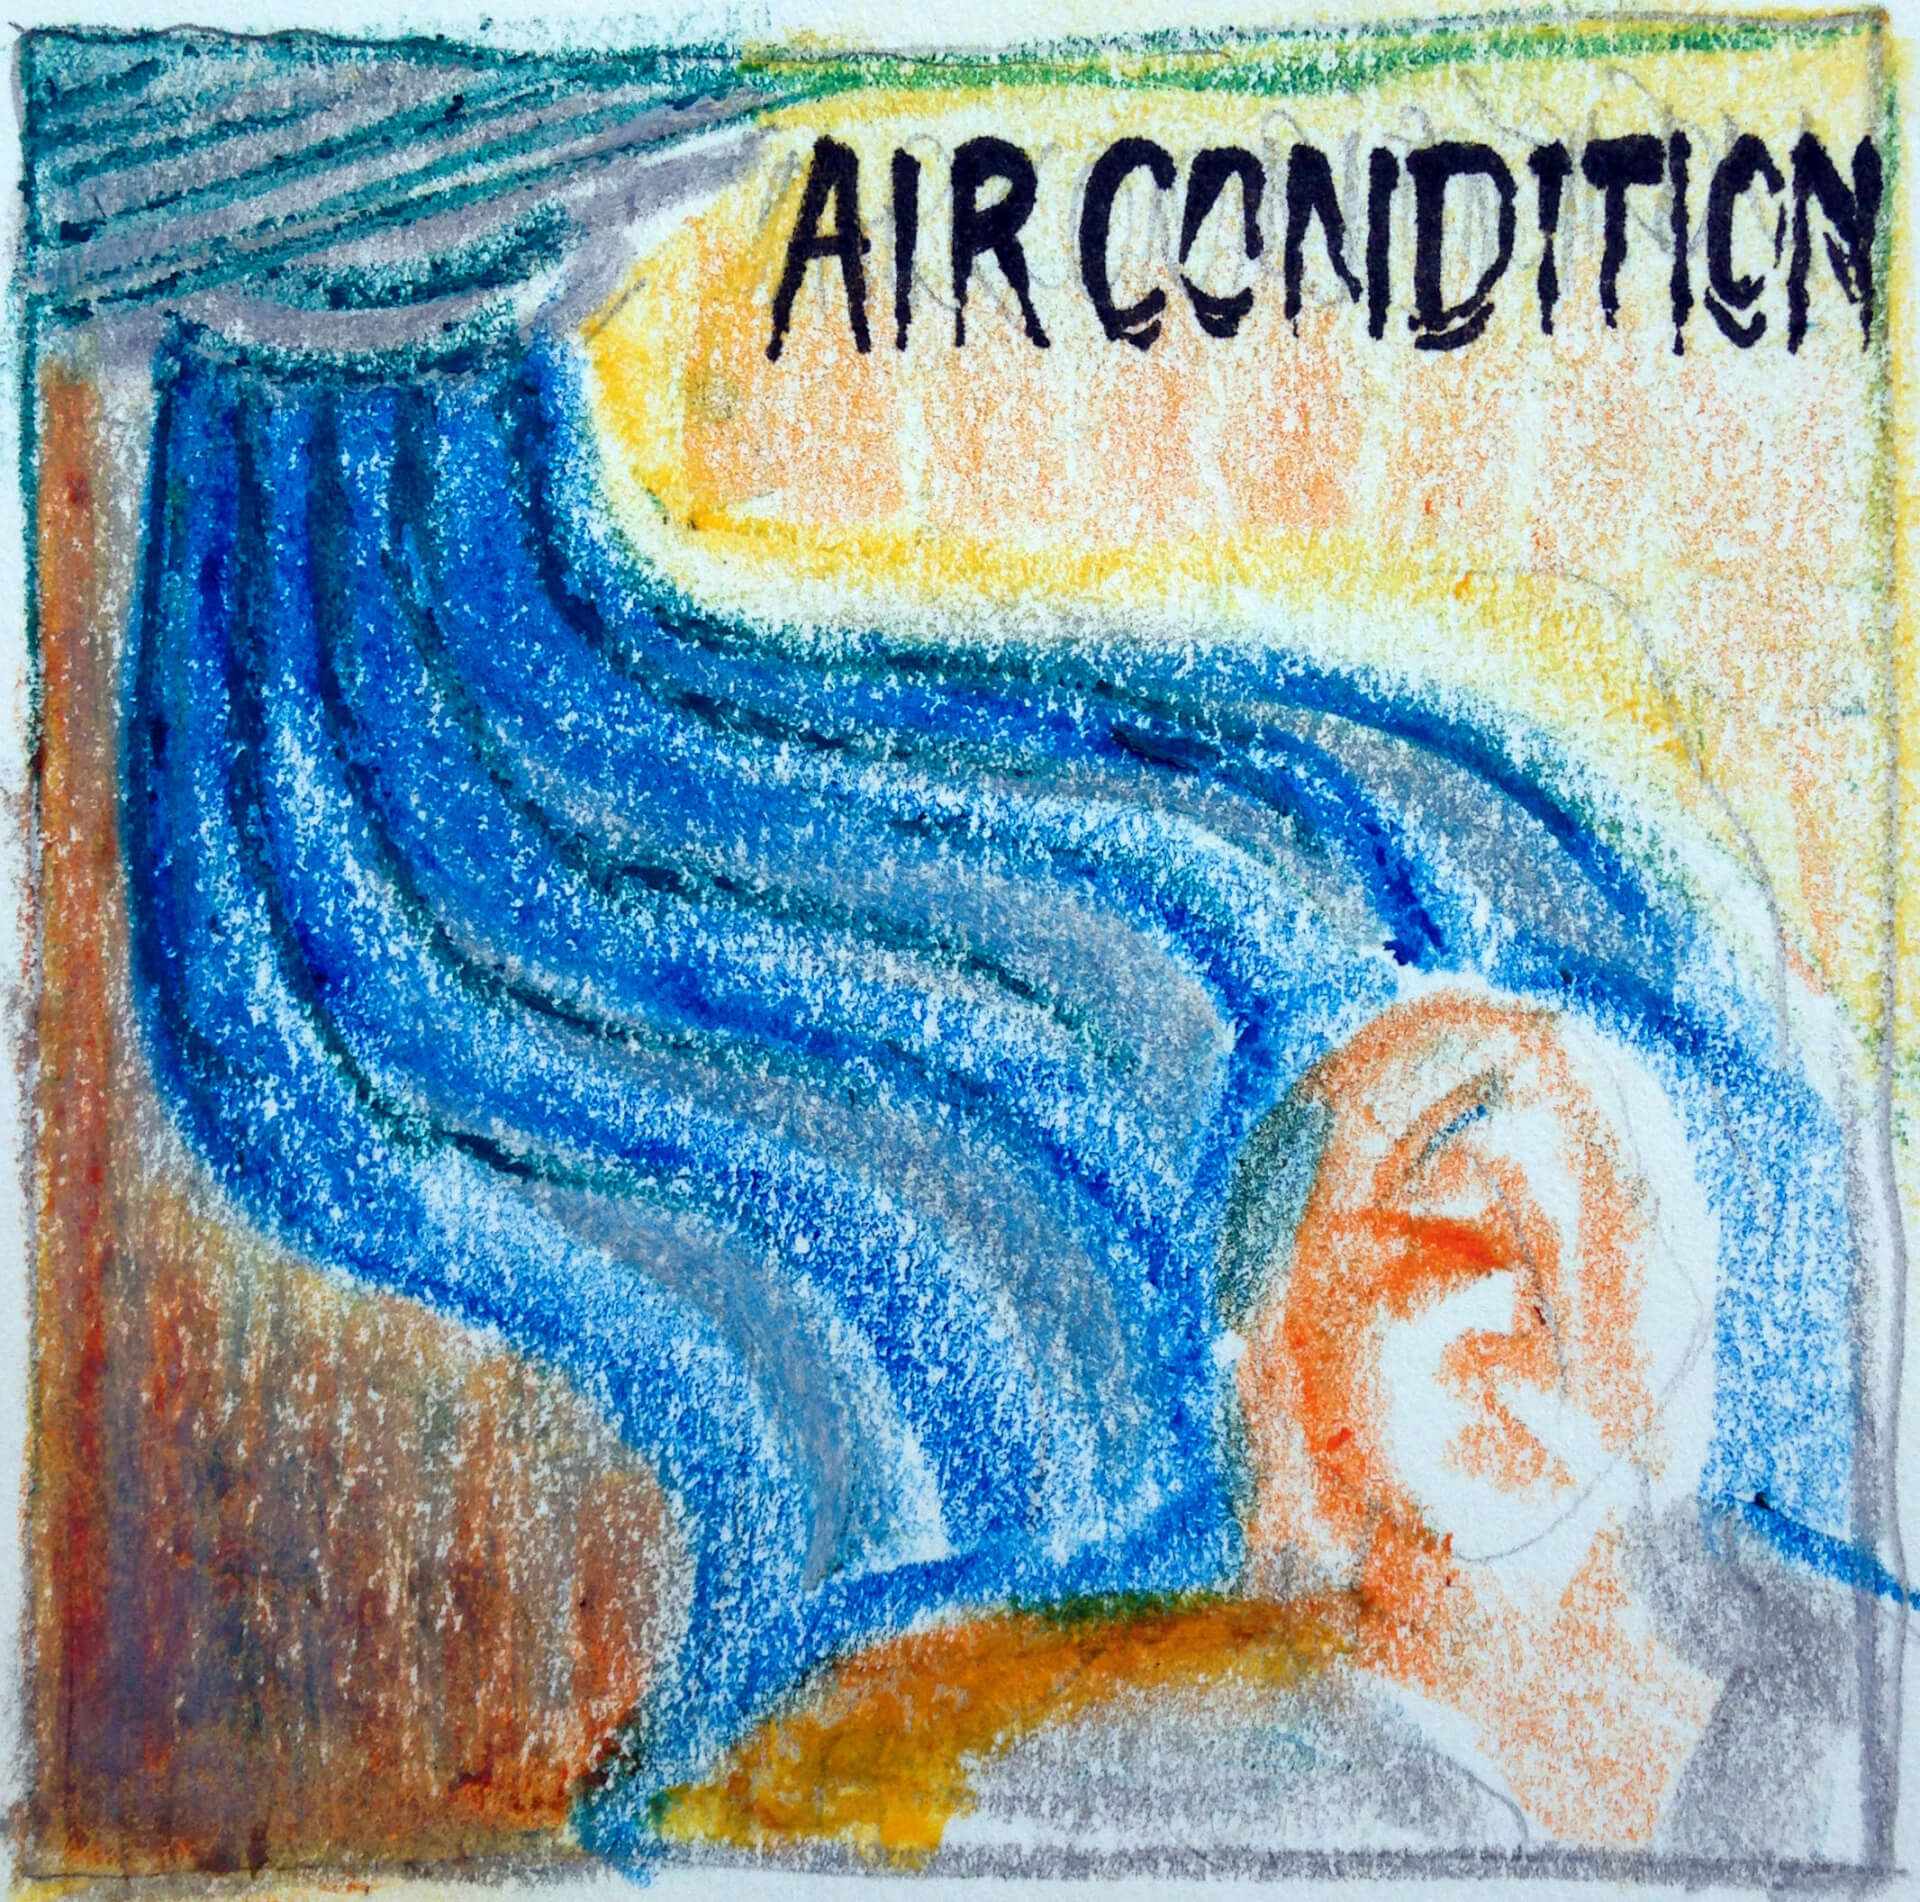 Eine bunte Buntstiftzeichnung einer Person, die eine Klimaanlage genießt, mit einer stilisierten Darstellung eines kühlen Luftstroms und ihrer Stimme, die Behaglichkeit ausdrückt.